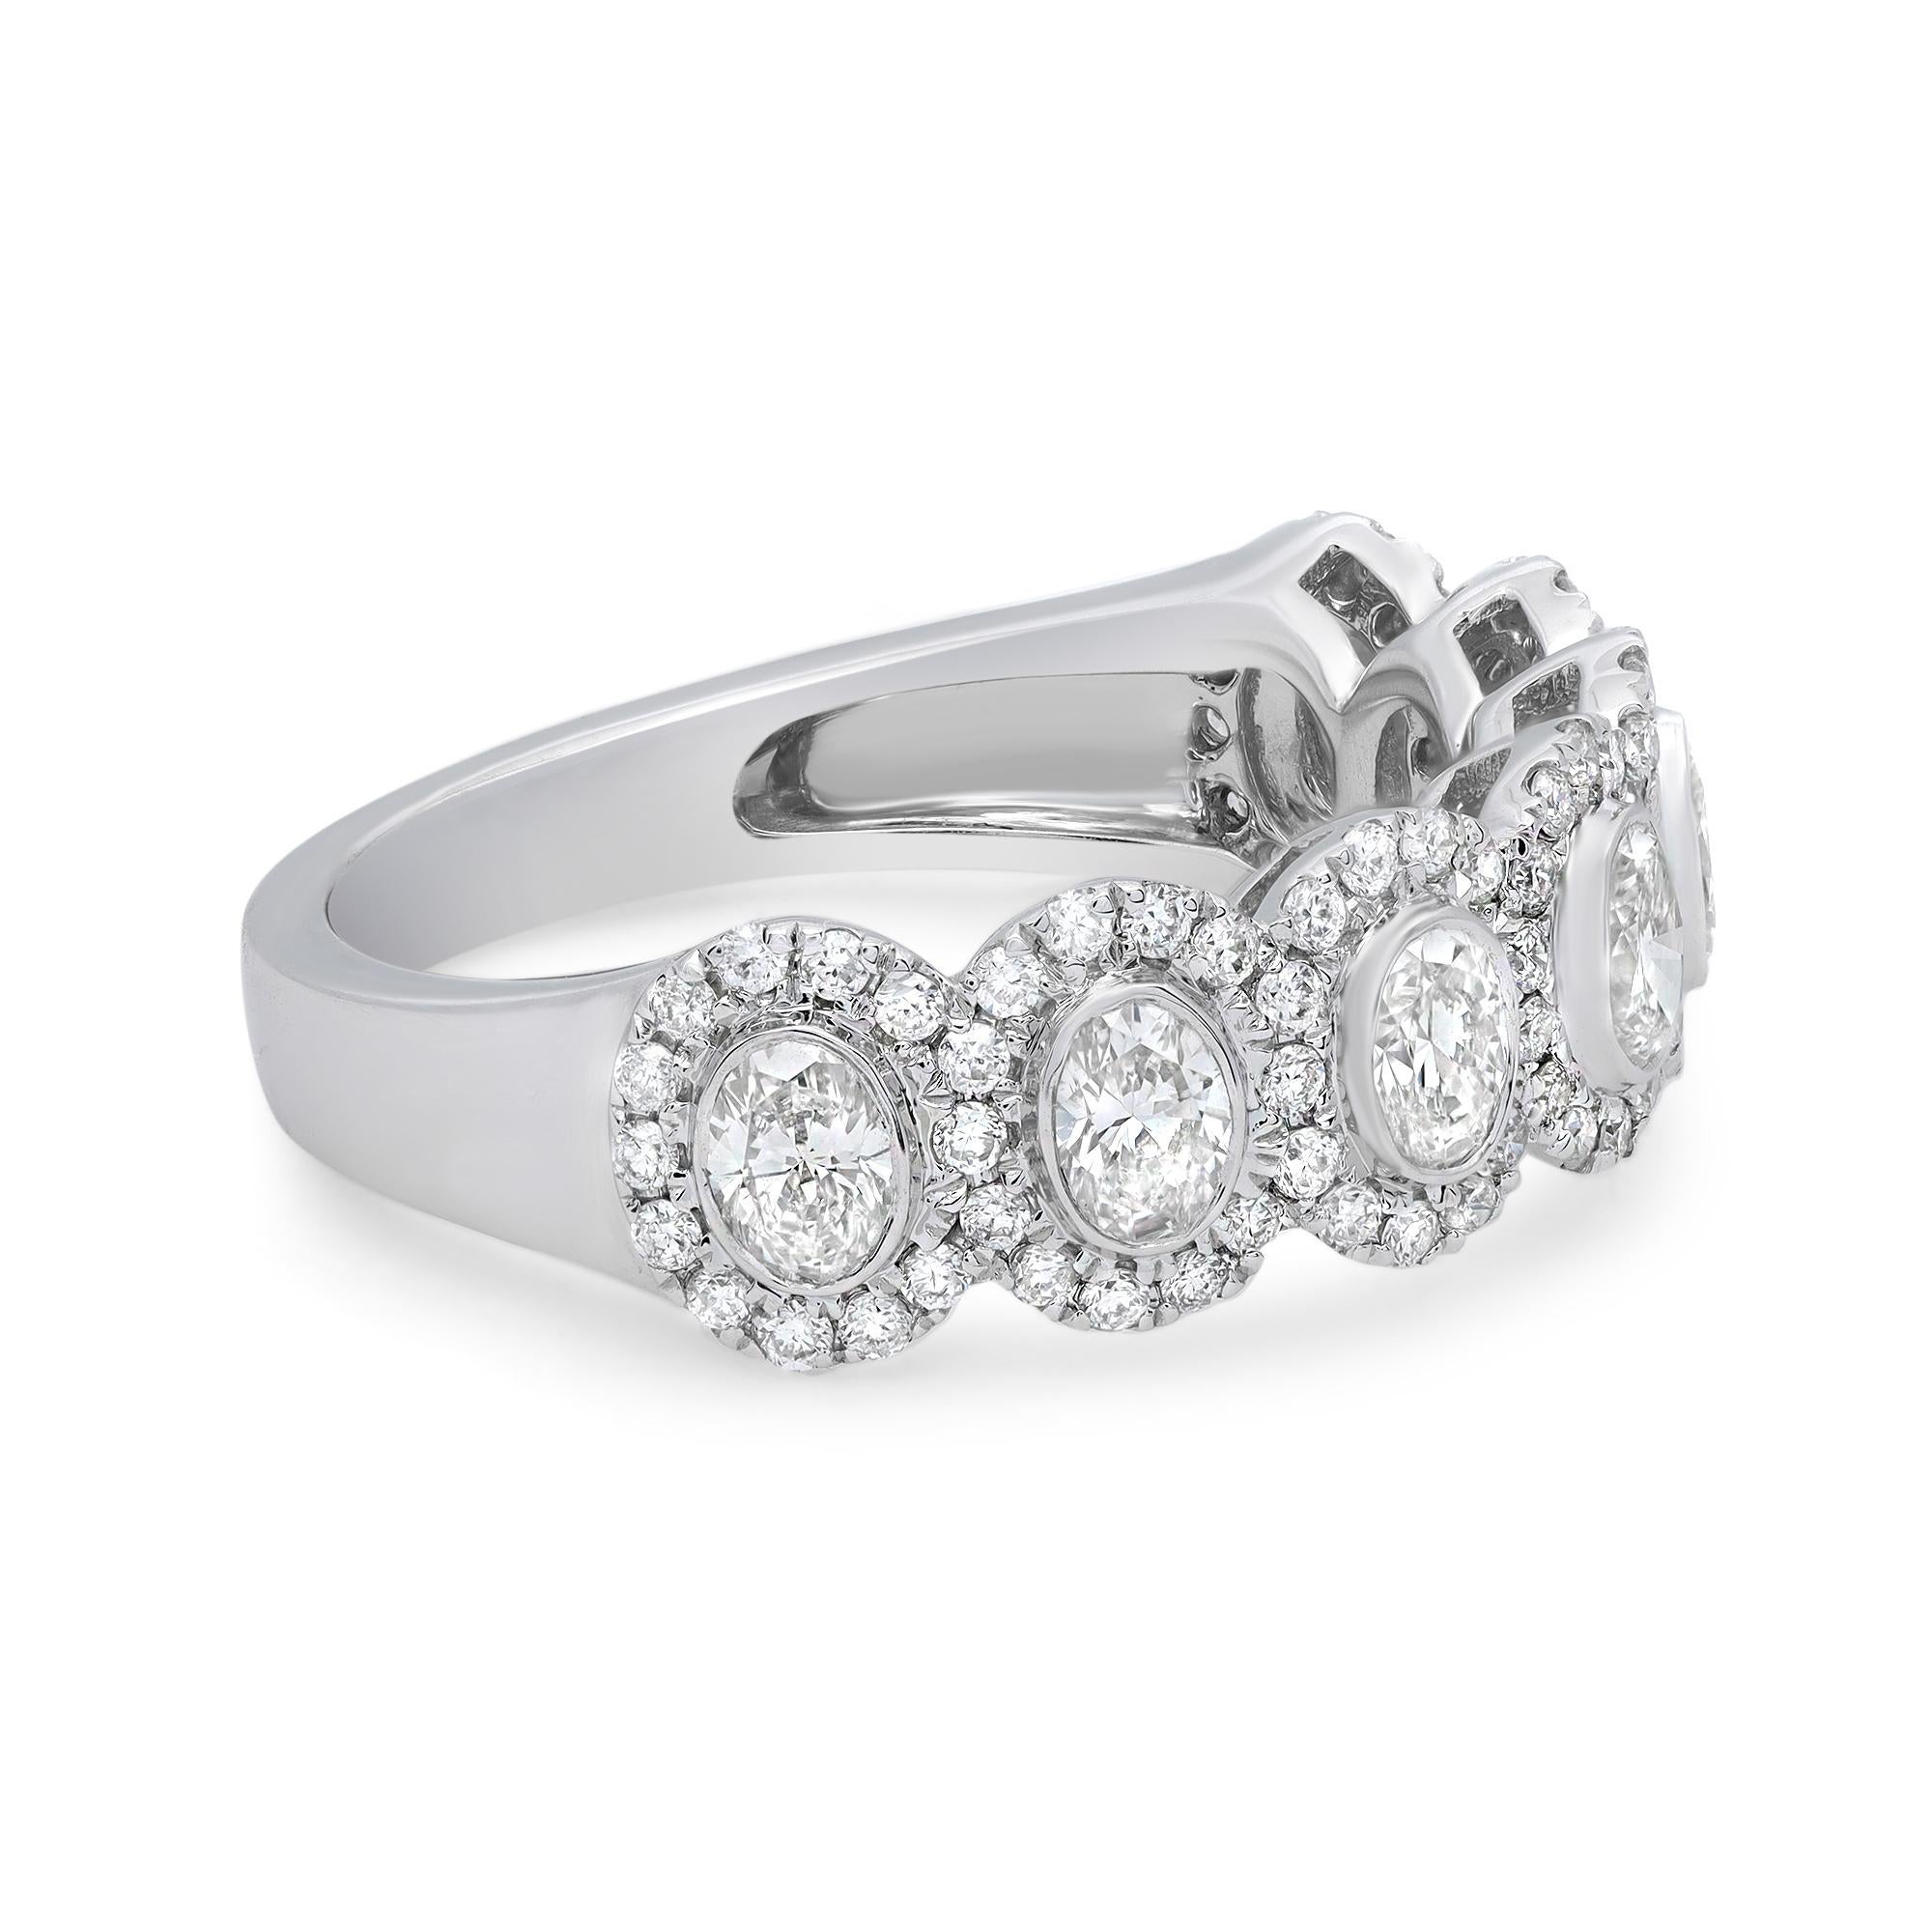 De superbes diamants de taille ovale entourés d'un halo de diamants supplémentaires dans cette ravissante bague de mariage pour femmes. Fabriqué de main de maître en or blanc 18 carats. Poids total des diamants : 1,33 carats. Diamant de couleur H-J